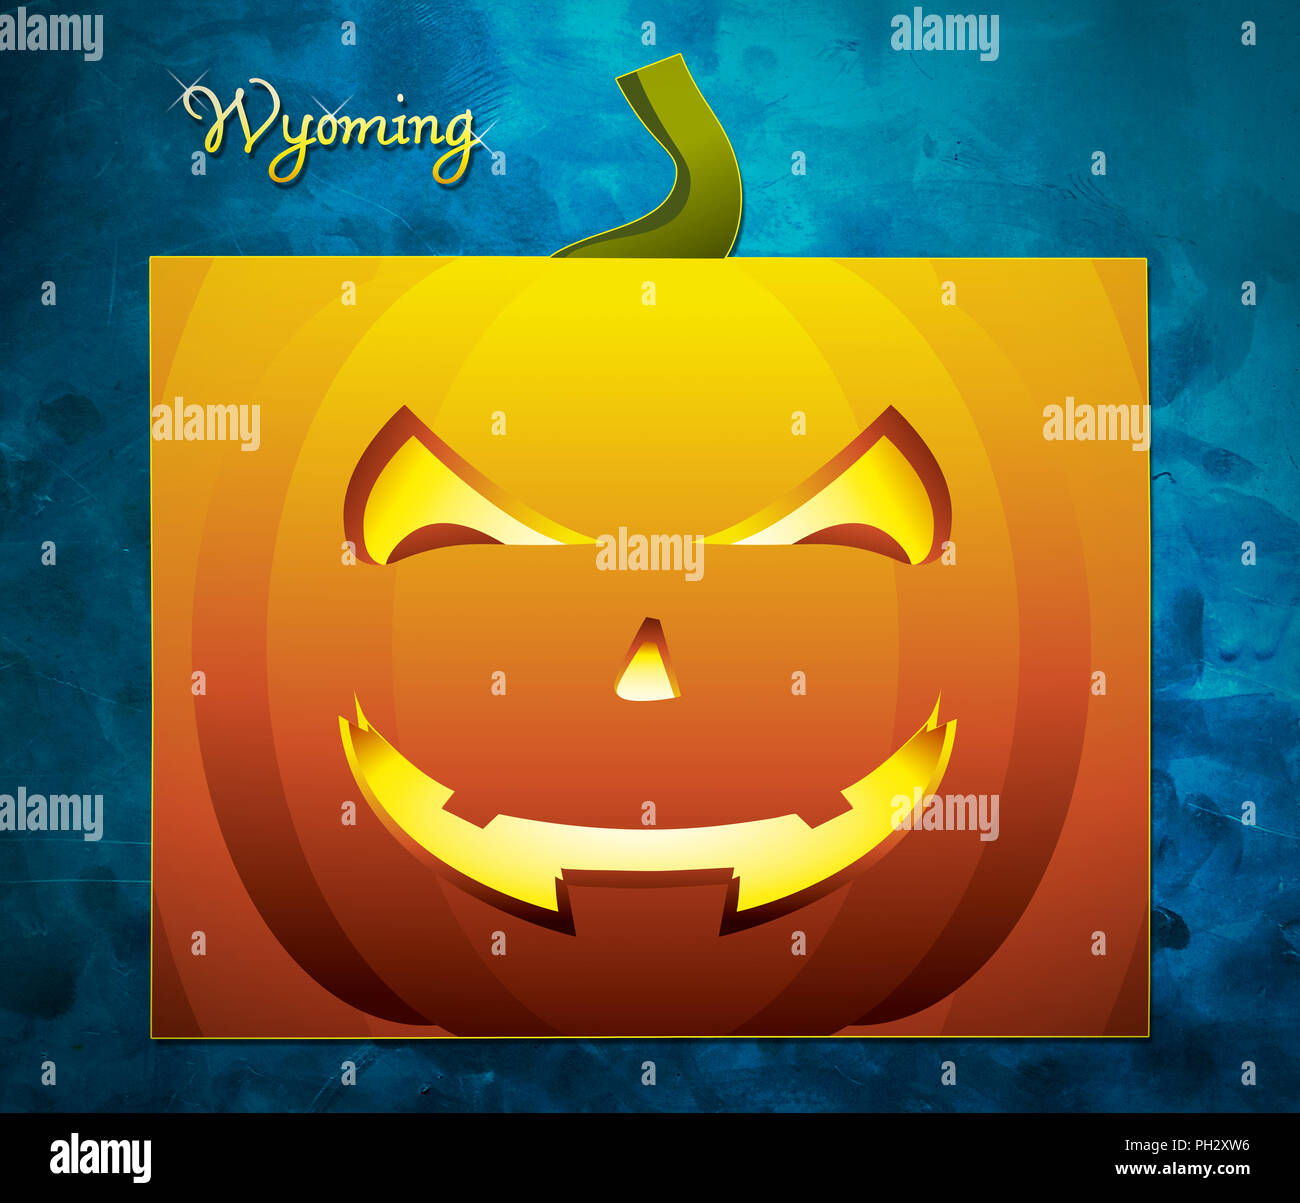 Wyoming State site USA avec face de citrouille halloween illustration Banque D'Images